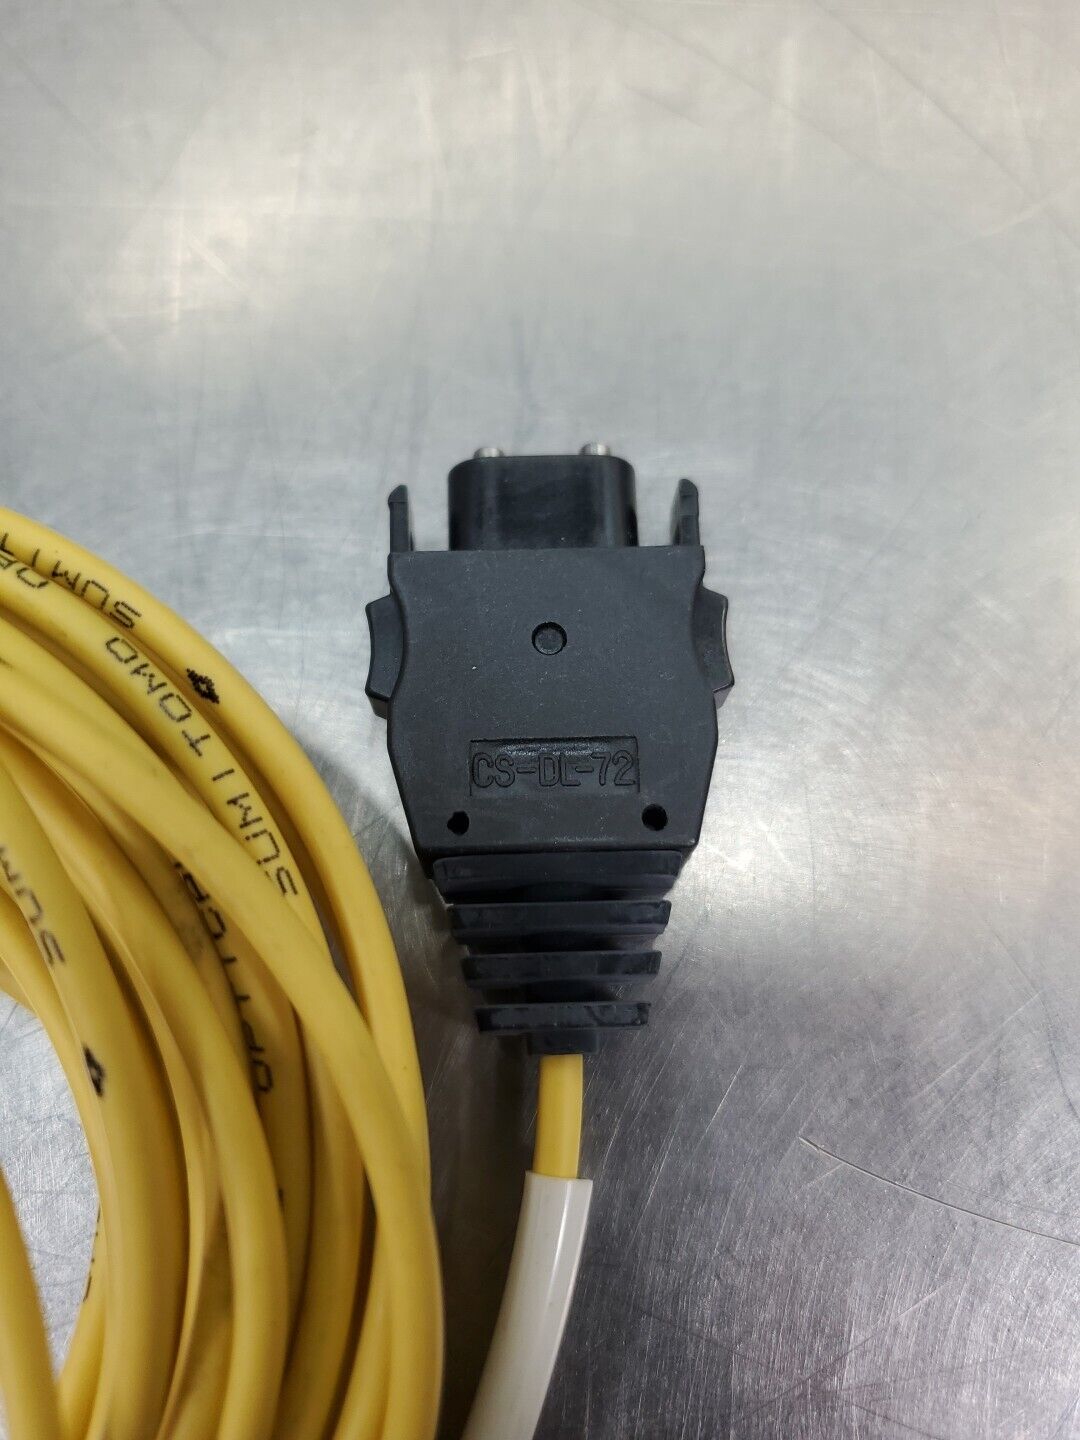 Sumitomo 5-Meter Optical Fiber Cable w/Mitsubishi CS-DL-72 Connectors.     5E-18